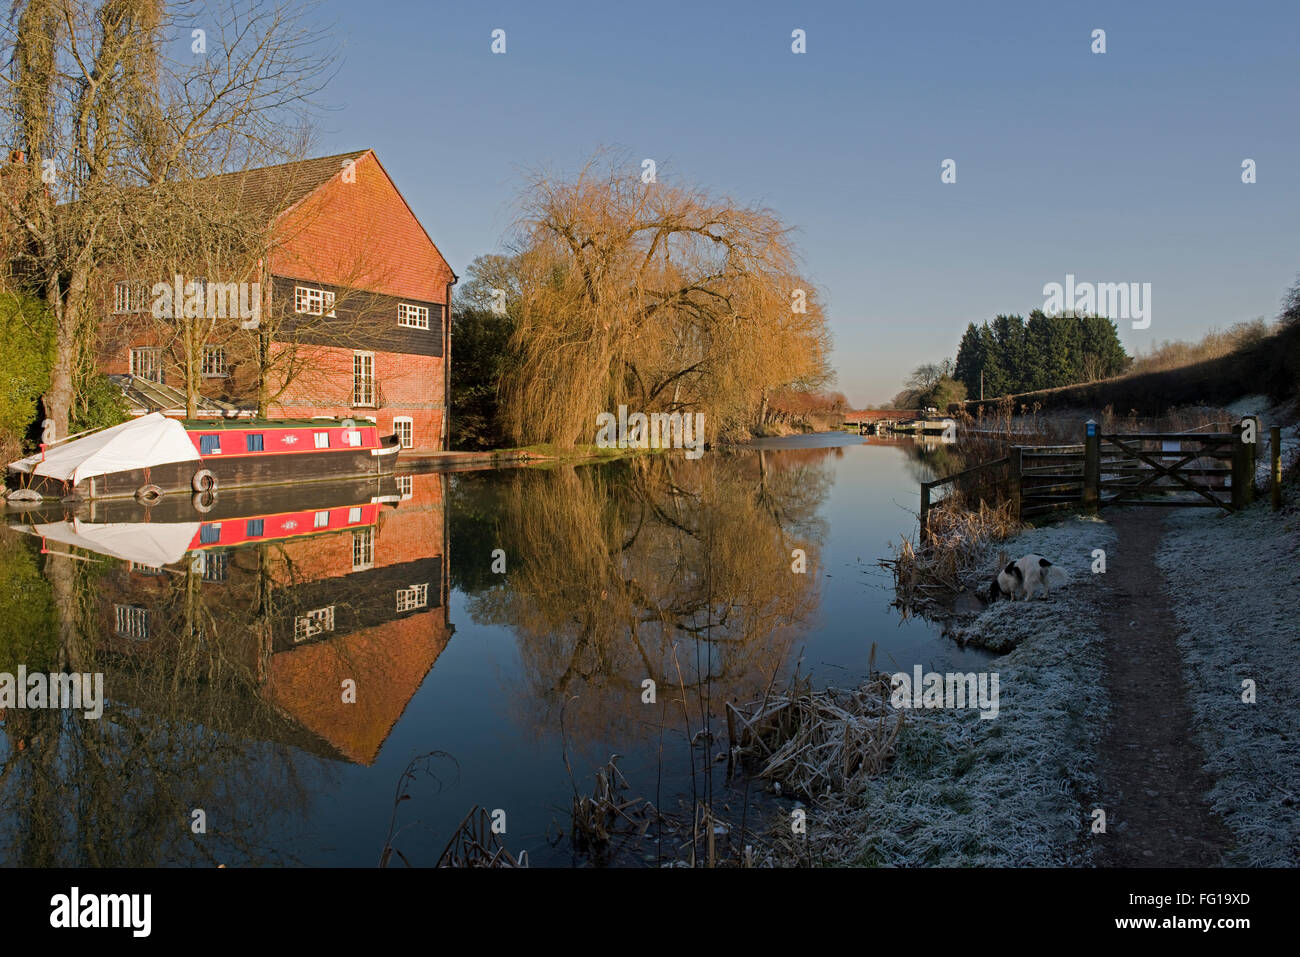 Kennet y Avon Canal en Hungerford común con escarcha, árbol, molino y embarcación angosta reflexiones en el agua todavía Foto de stock